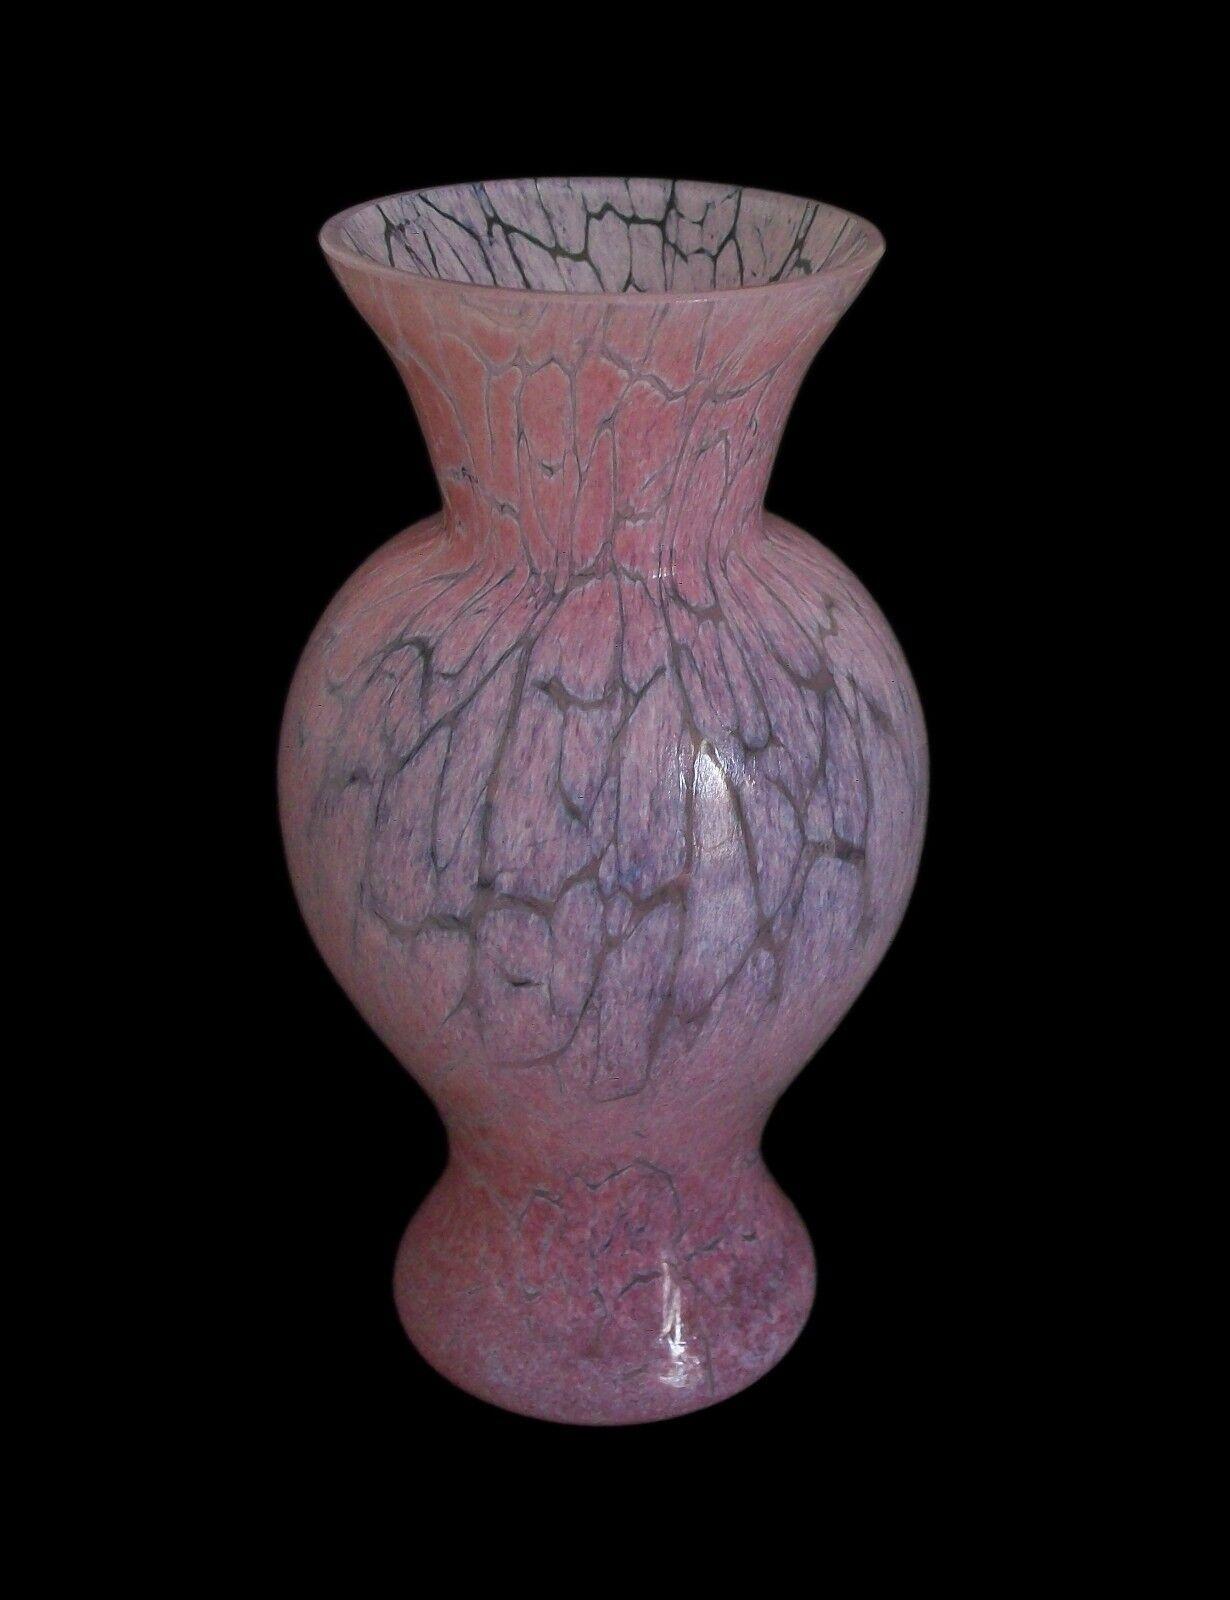 KOSTA BODA  Ulrica Hydman-Vallien (Designerin - geb. 1938) - Vase aus rosa Craquelé-Glas aus der Mitte des Jahrhunderts - mundgeblasen - signiert - Schweden - ca. 1970er Jahre.

Hervorragender/neuwertiger Zustand - kein Verlust - keine Beschädigung